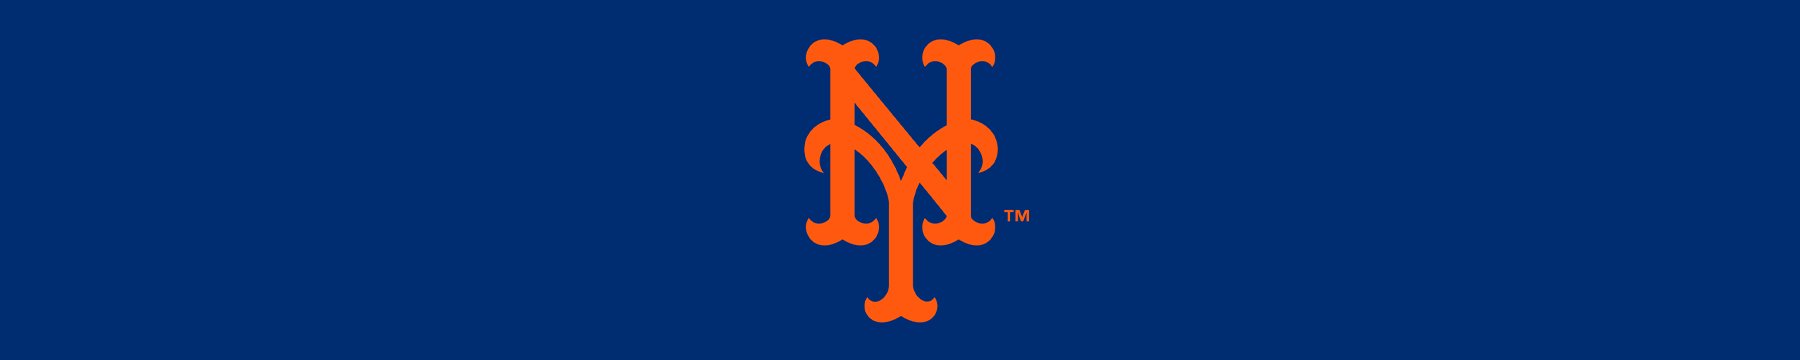 Official New York Mets Website